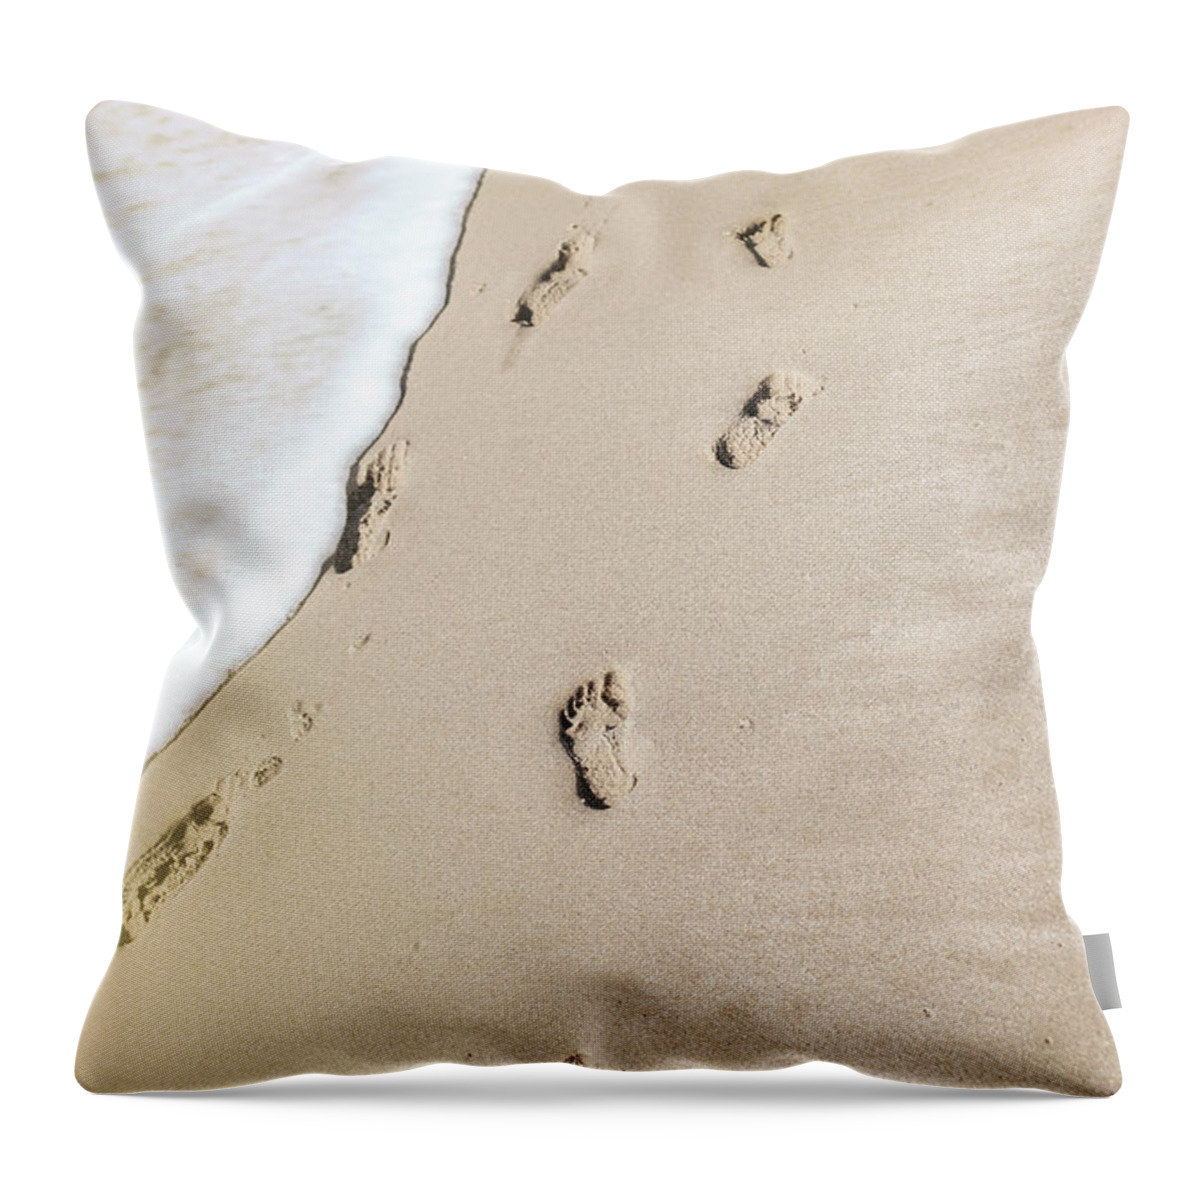 Beach Throw Pillow featuring the photograph Little Feet by Jody Lane